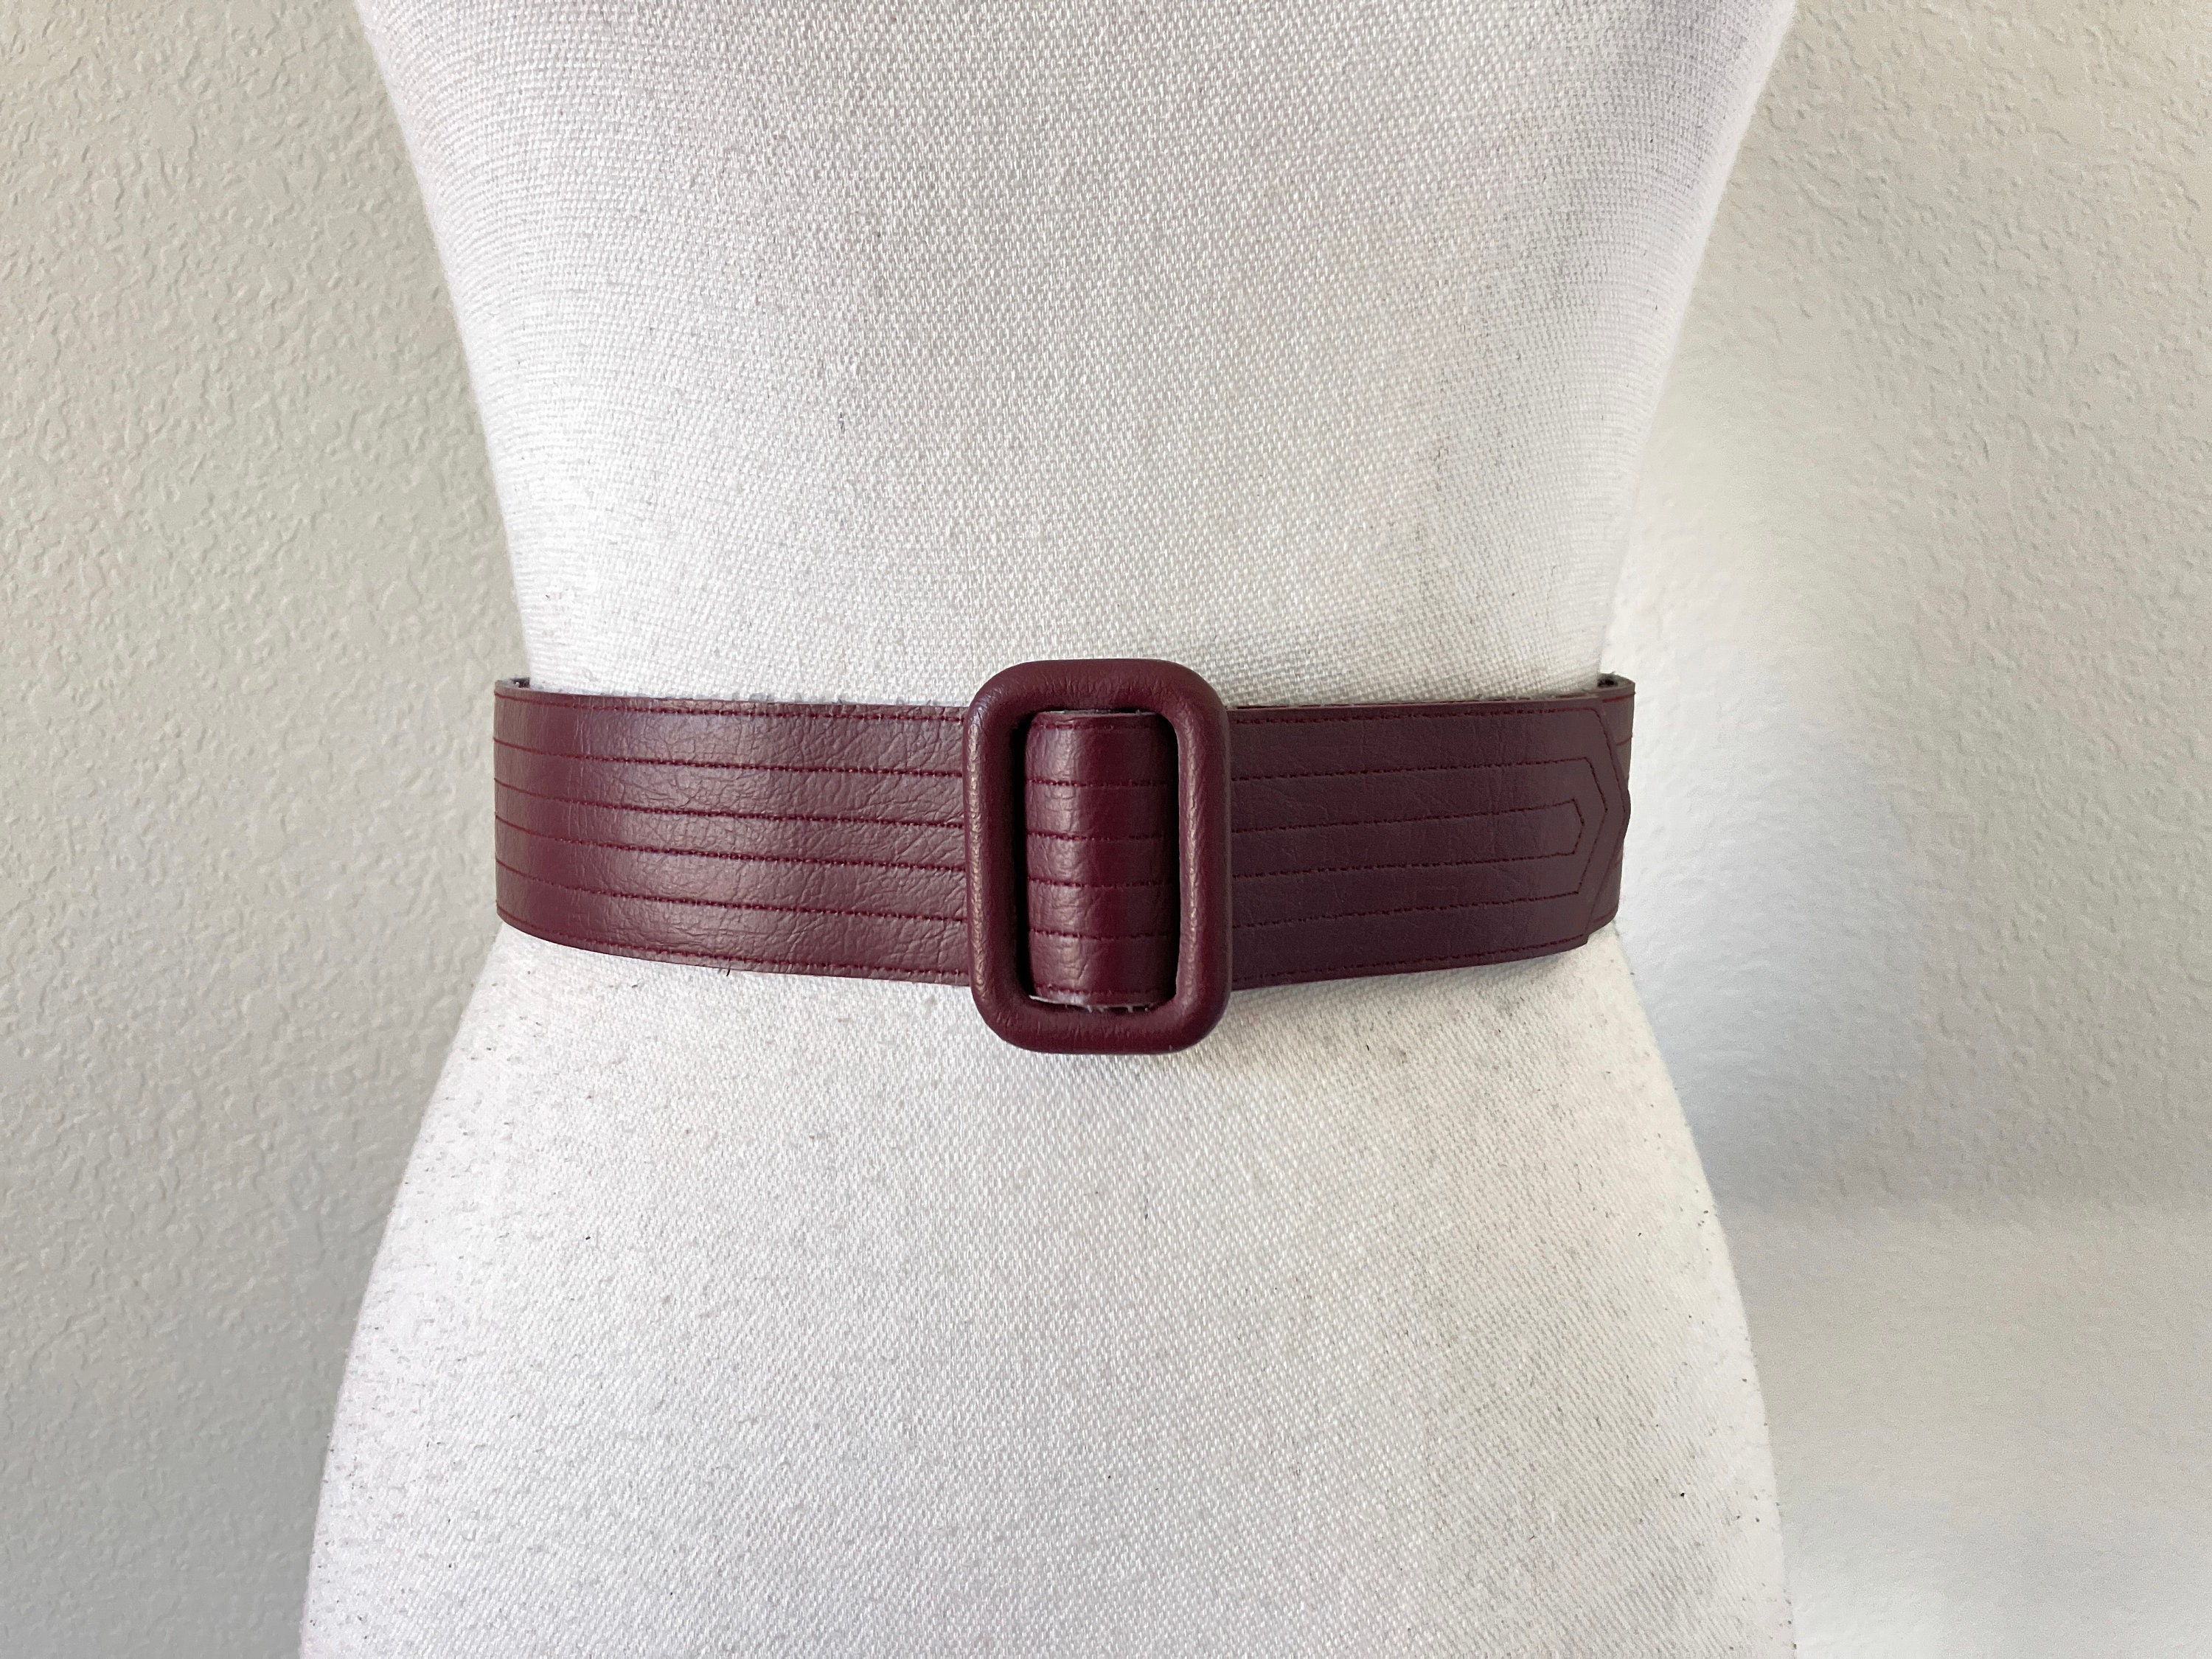  A+TTXH+L Mens Belt Belts Men Leather Vintage Casual